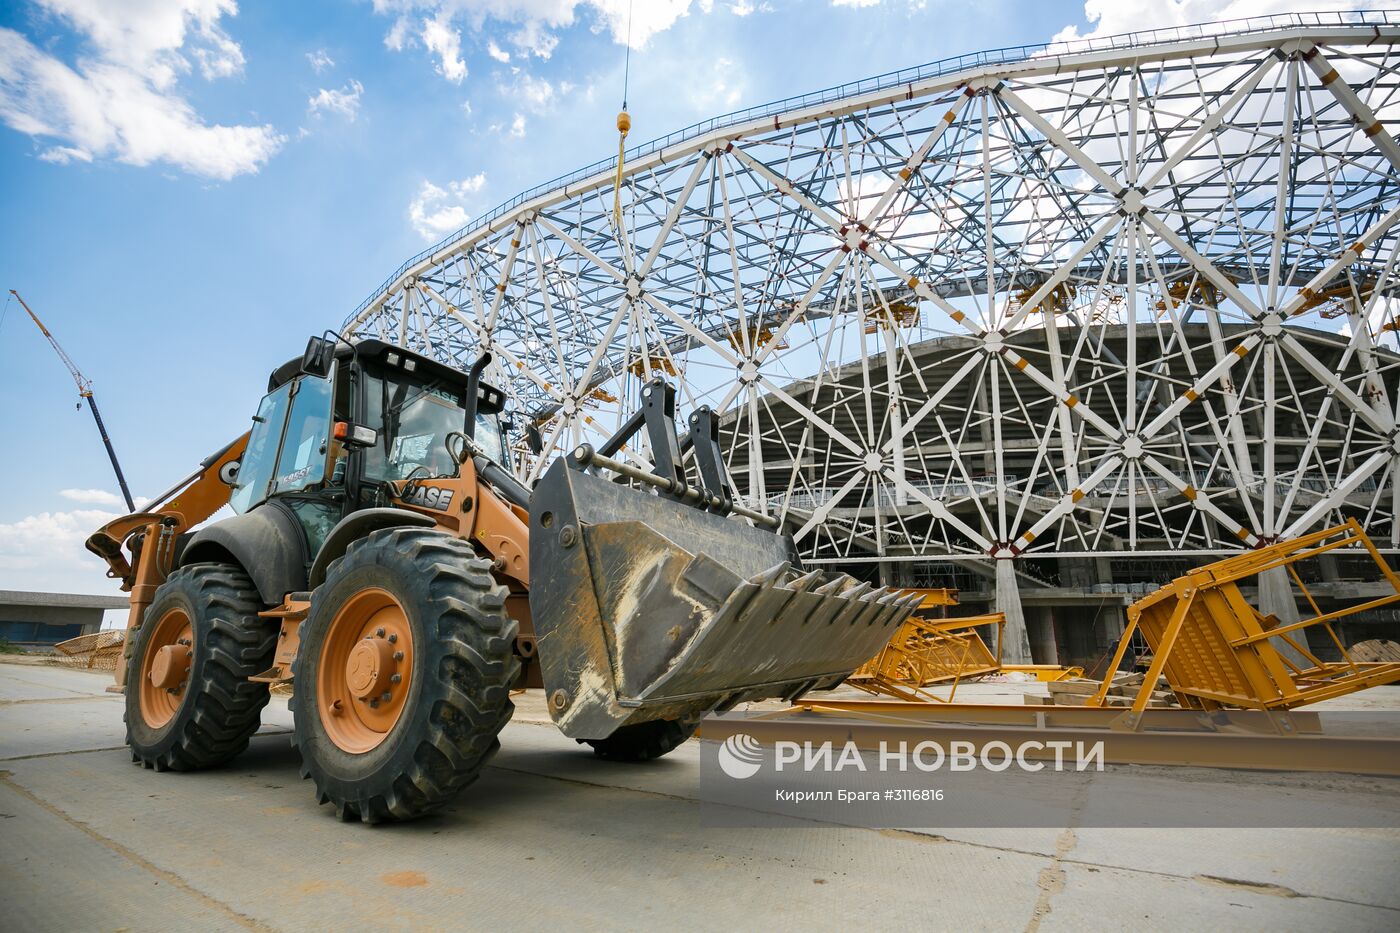 Строительство стадиона "Волгоград Арена" в Волгограде к чемпионату мира по футболу 2018 года.